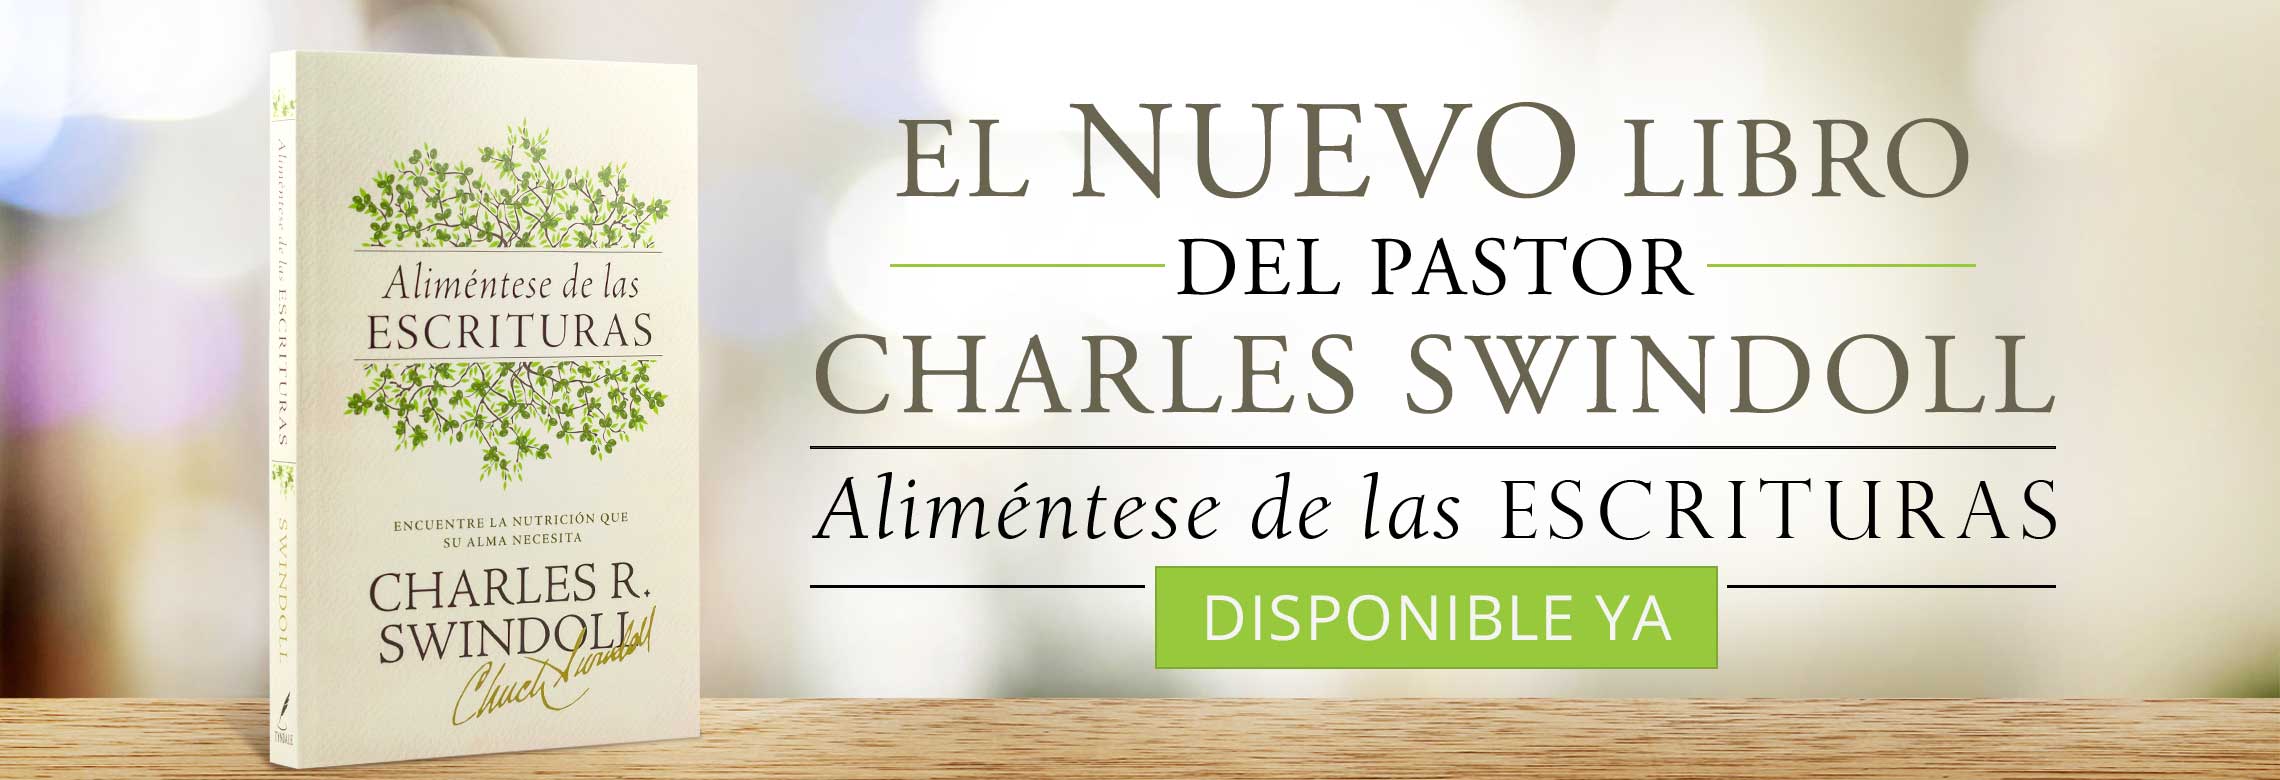 Disponible Ya: El Nuevo Libro del Pastor Charles Swindoll: Aliméntese de las Escrituras